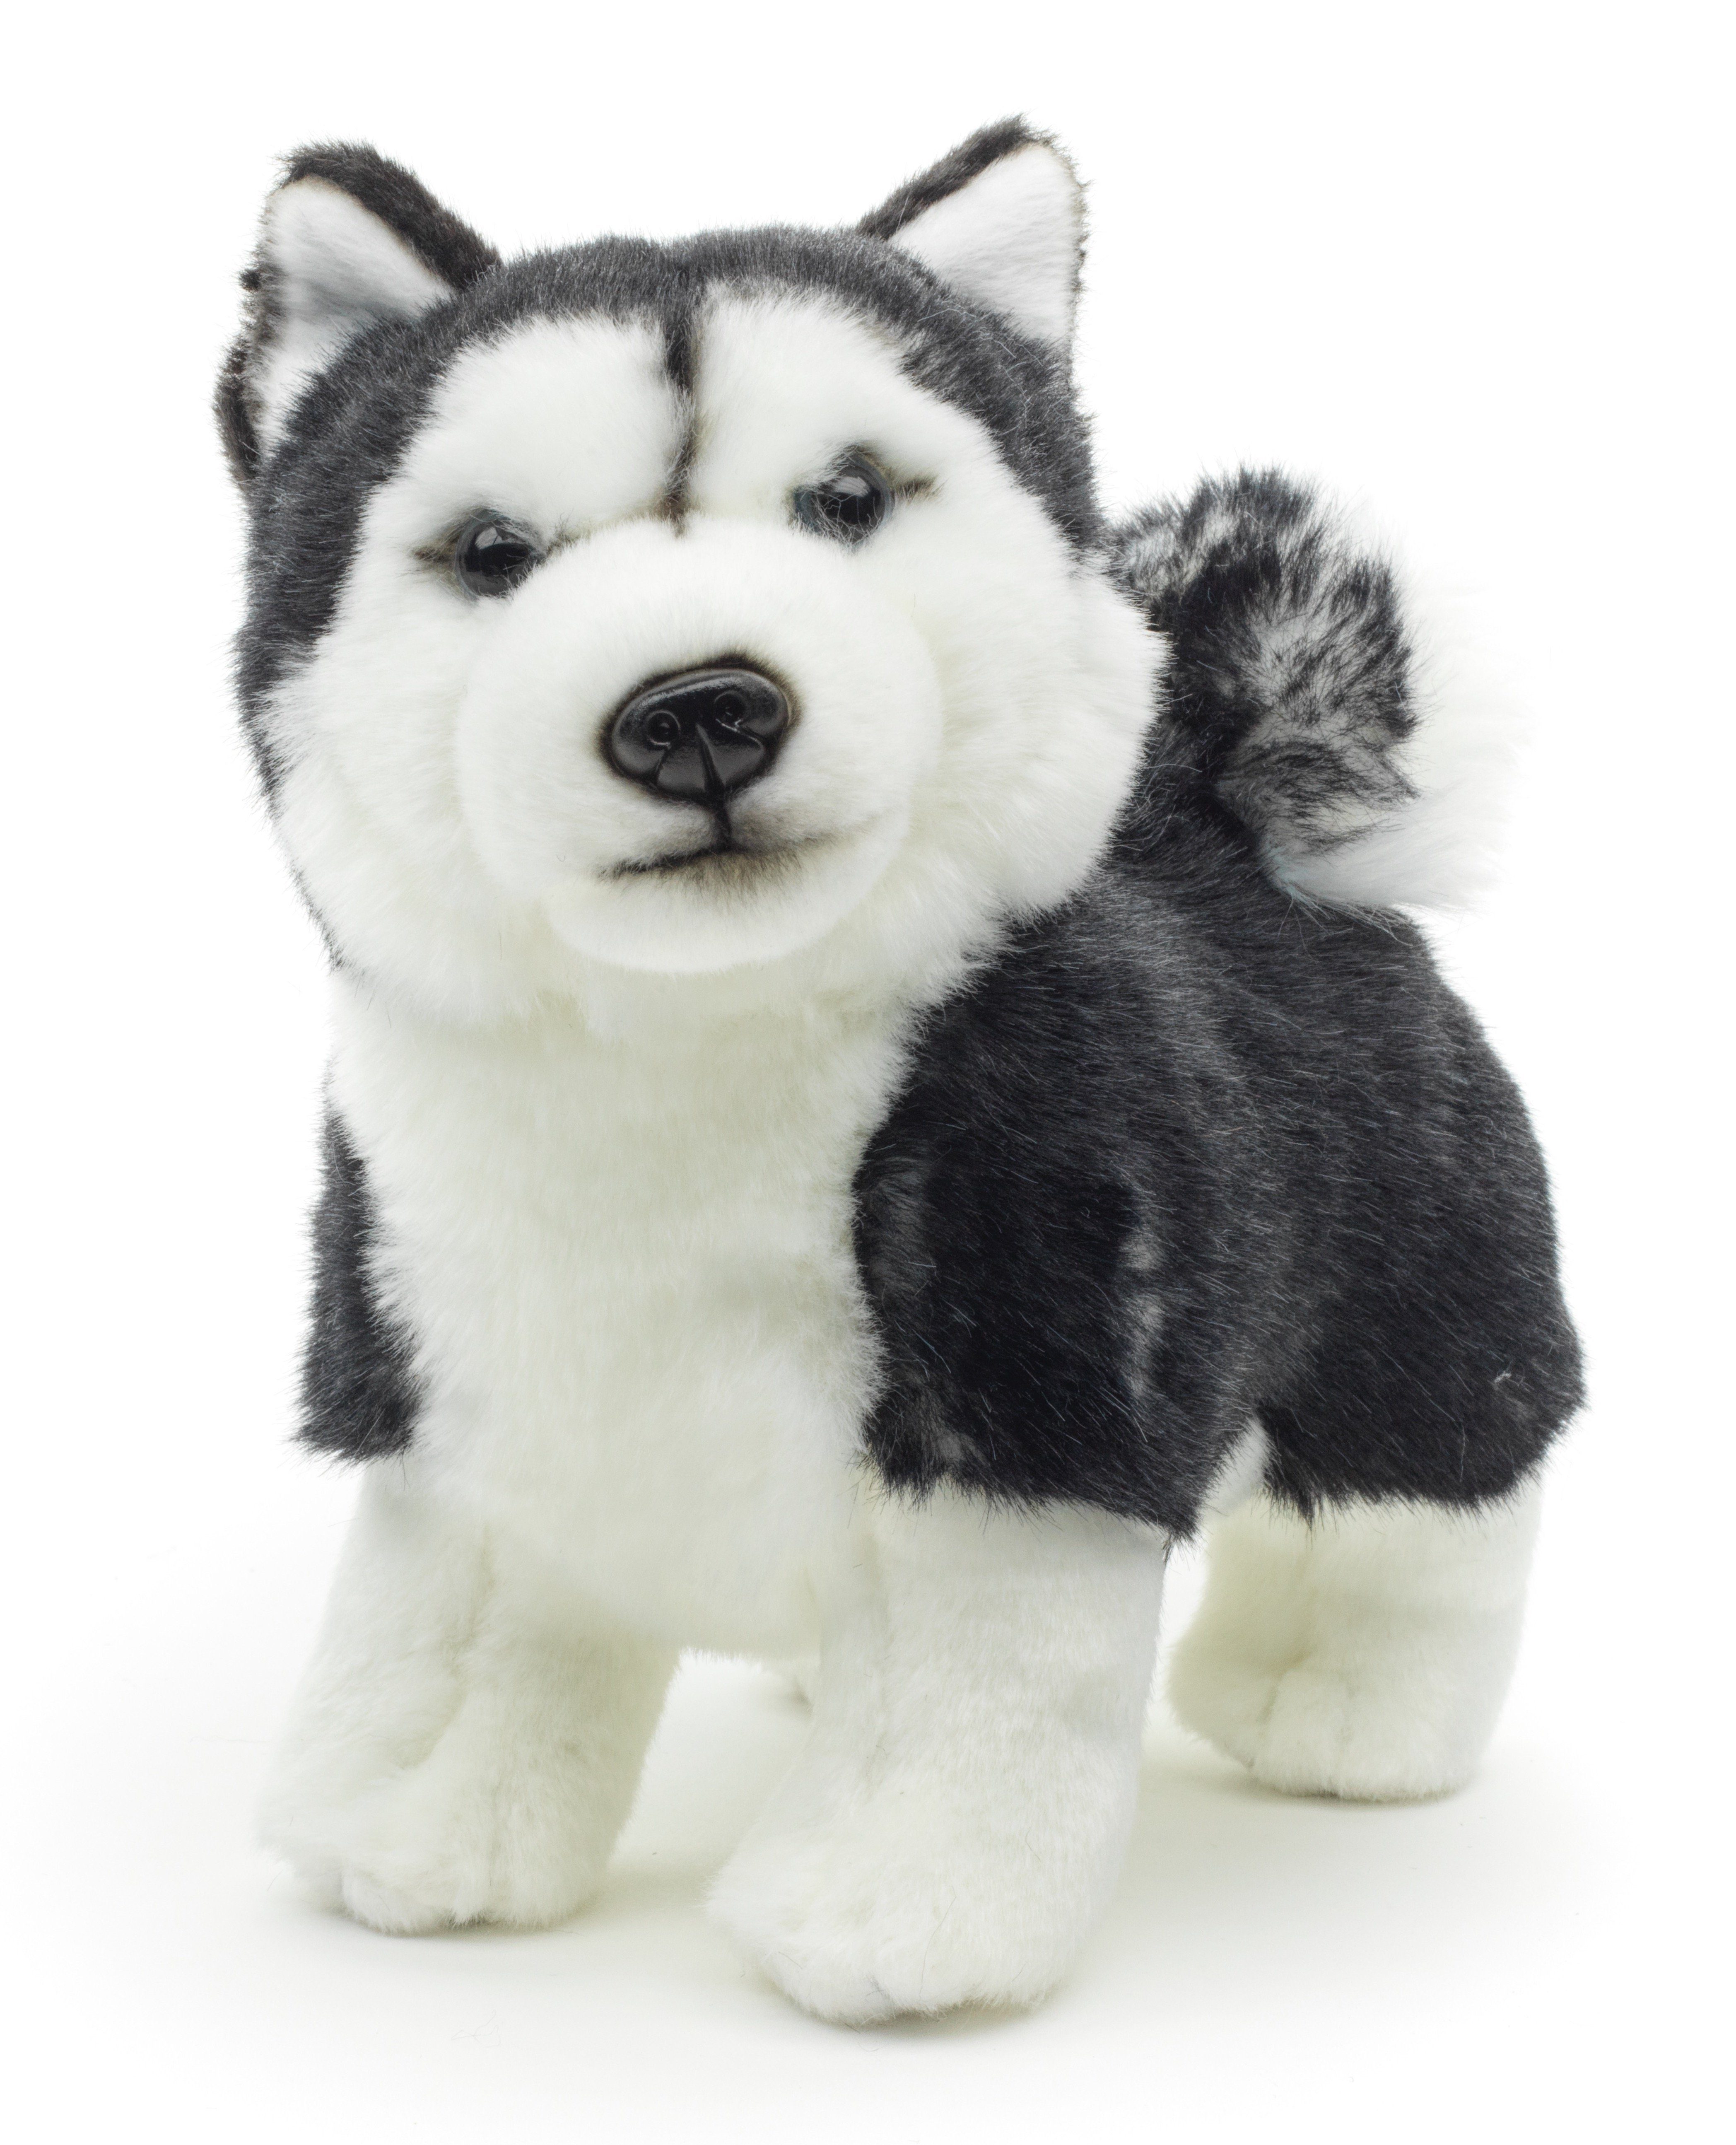 Uni-Toys Kuscheltier Husky Welpe schwarz, stehend - 24 cm - Plüsch-Hund, Plüschtier, zu 100 % recyceltes Füllmaterial